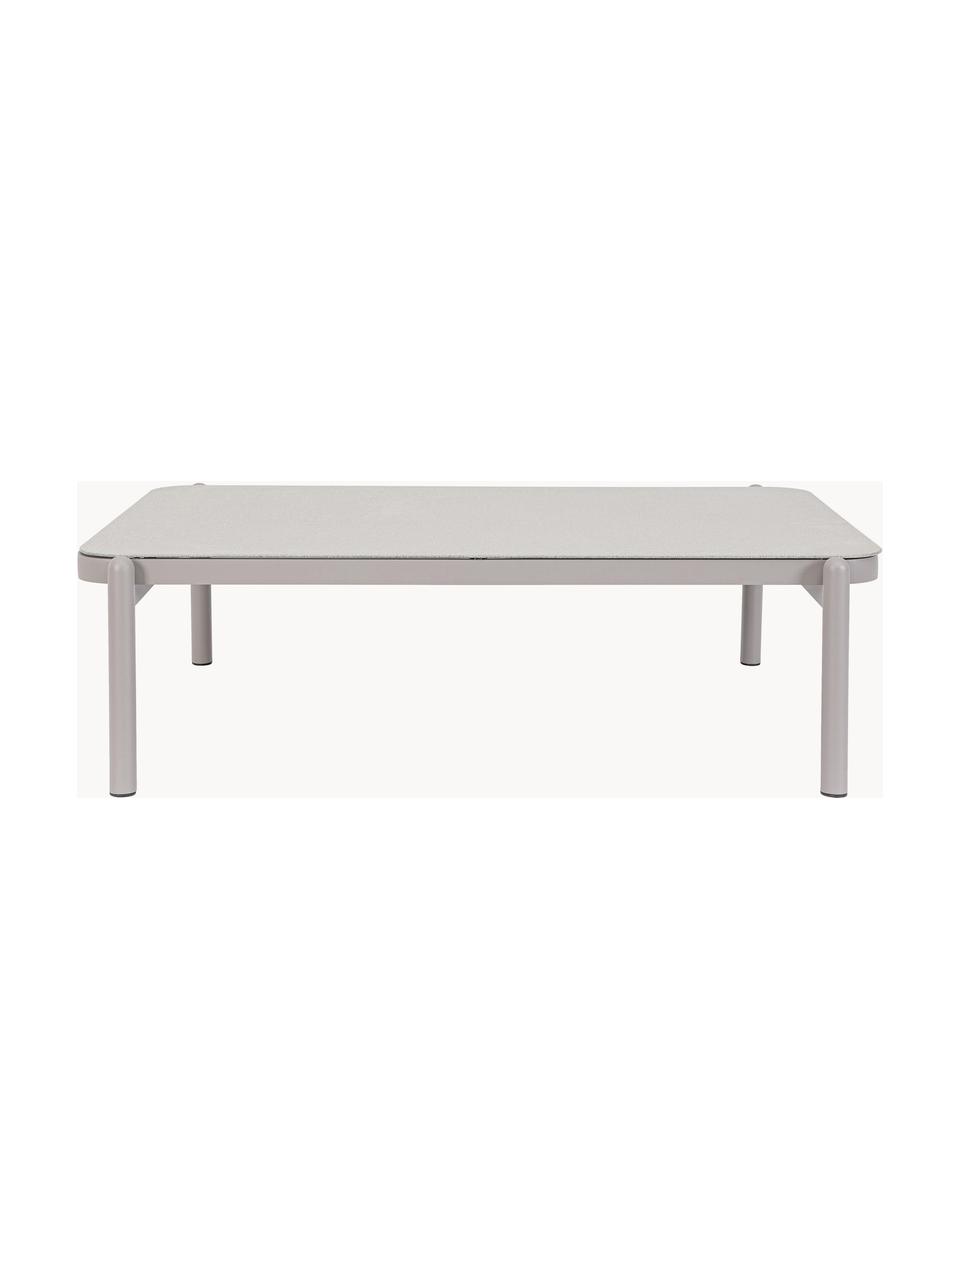 Table basse de jardin Florencia, Aluminium, revêtement par poudre, Gris clair, larg. 120 x prof. 75 cm